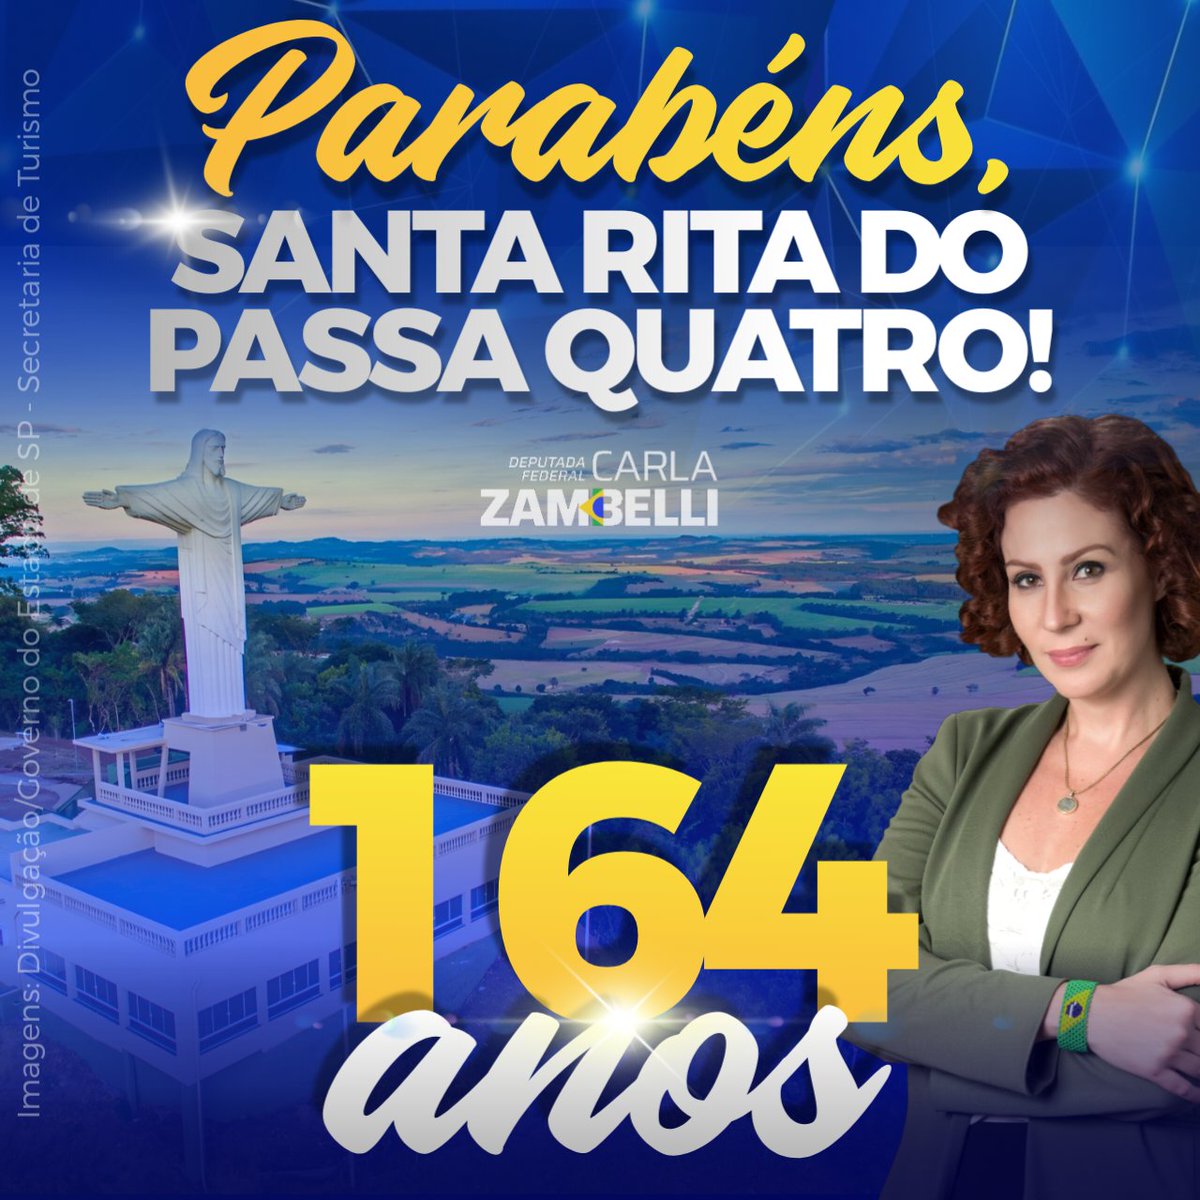 Parabéns a cada cidadão de Santa Rita do Passa Quatro pelos 164 anos desta cidade querida!